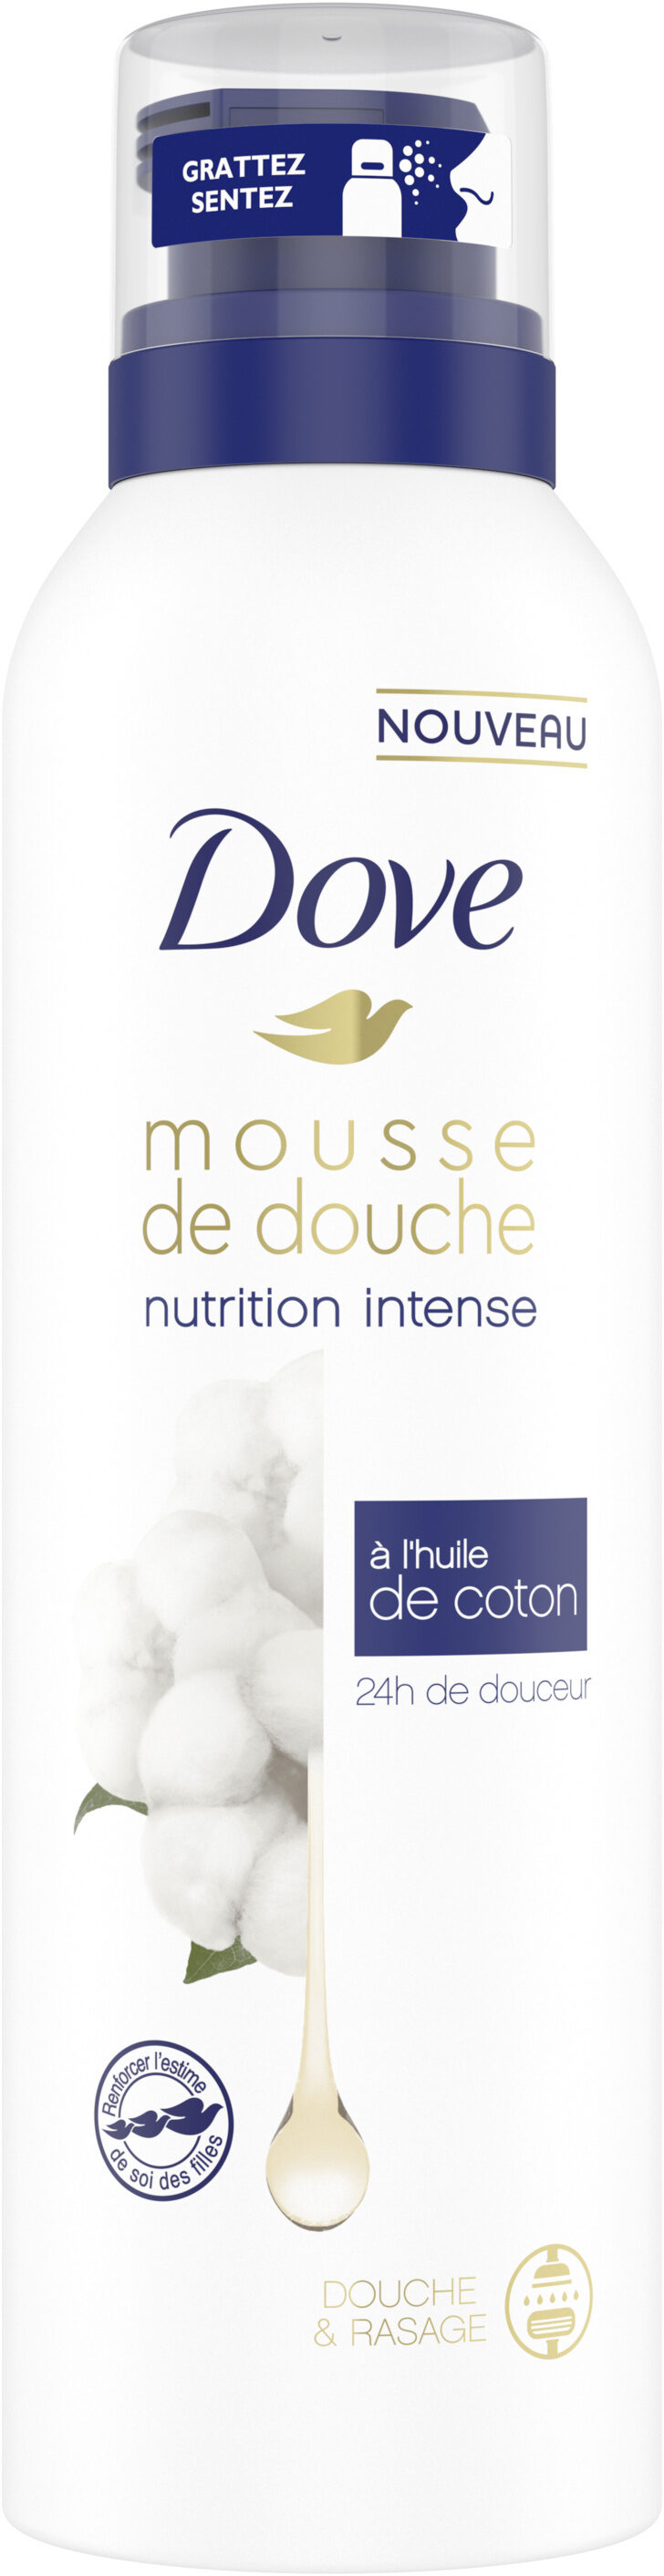 Dove Nutrition Intense Gel Douche Mousse à l'Huile de Coton 24h de Douceur Douche & Rasage - Product - fr